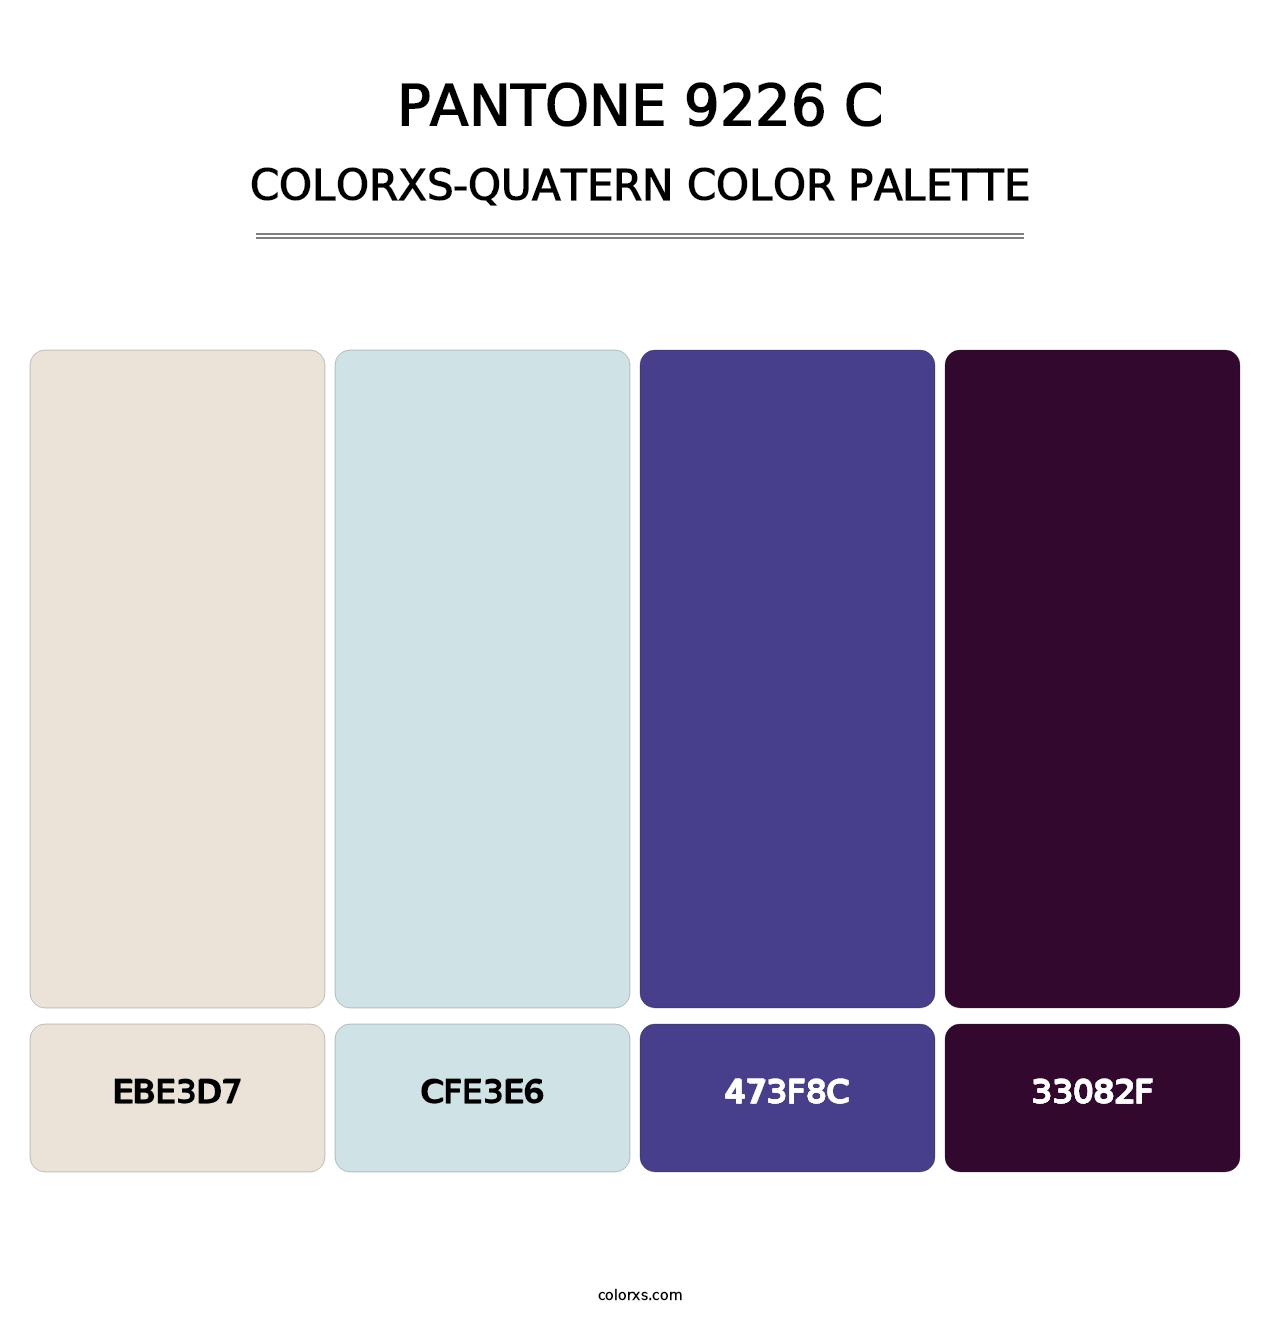 PANTONE 9226 C - Colorxs Quatern Palette